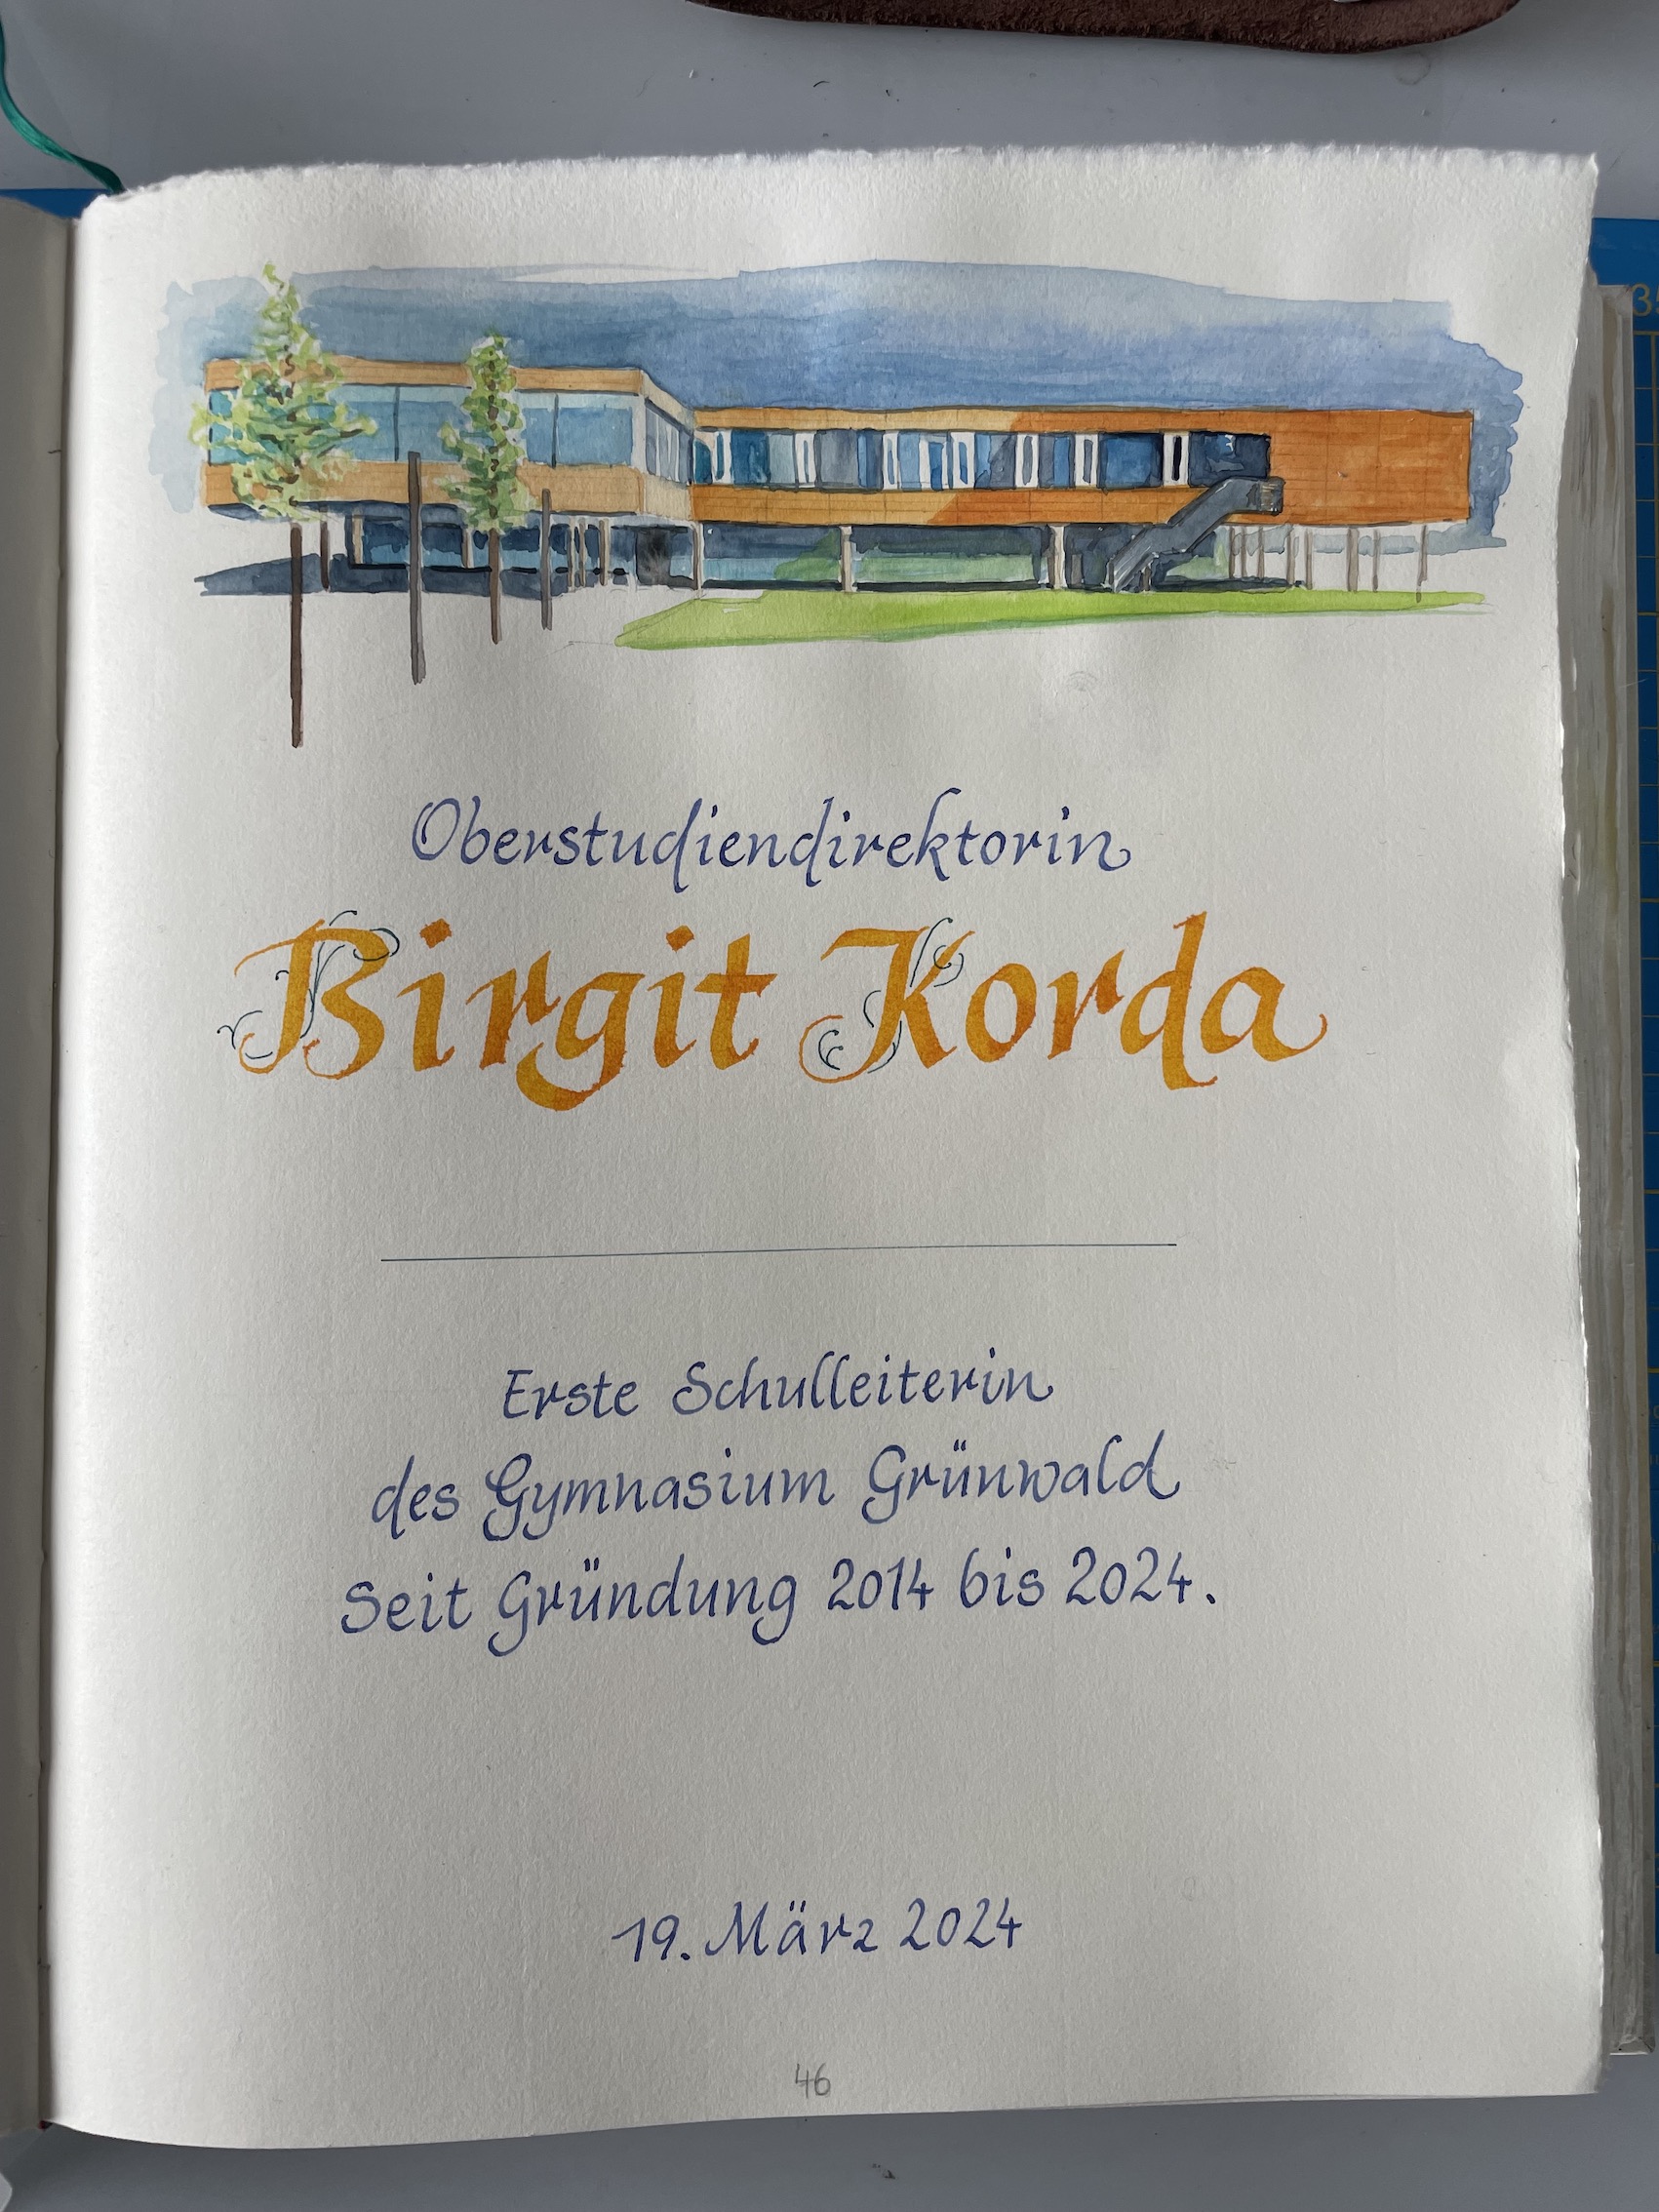 Eintrag in das Goldenes Buch der Gemeinde Grünwald mit einer Illustration für Birgit Korda, erste Schulleiterin des Gymnasium Grünwald